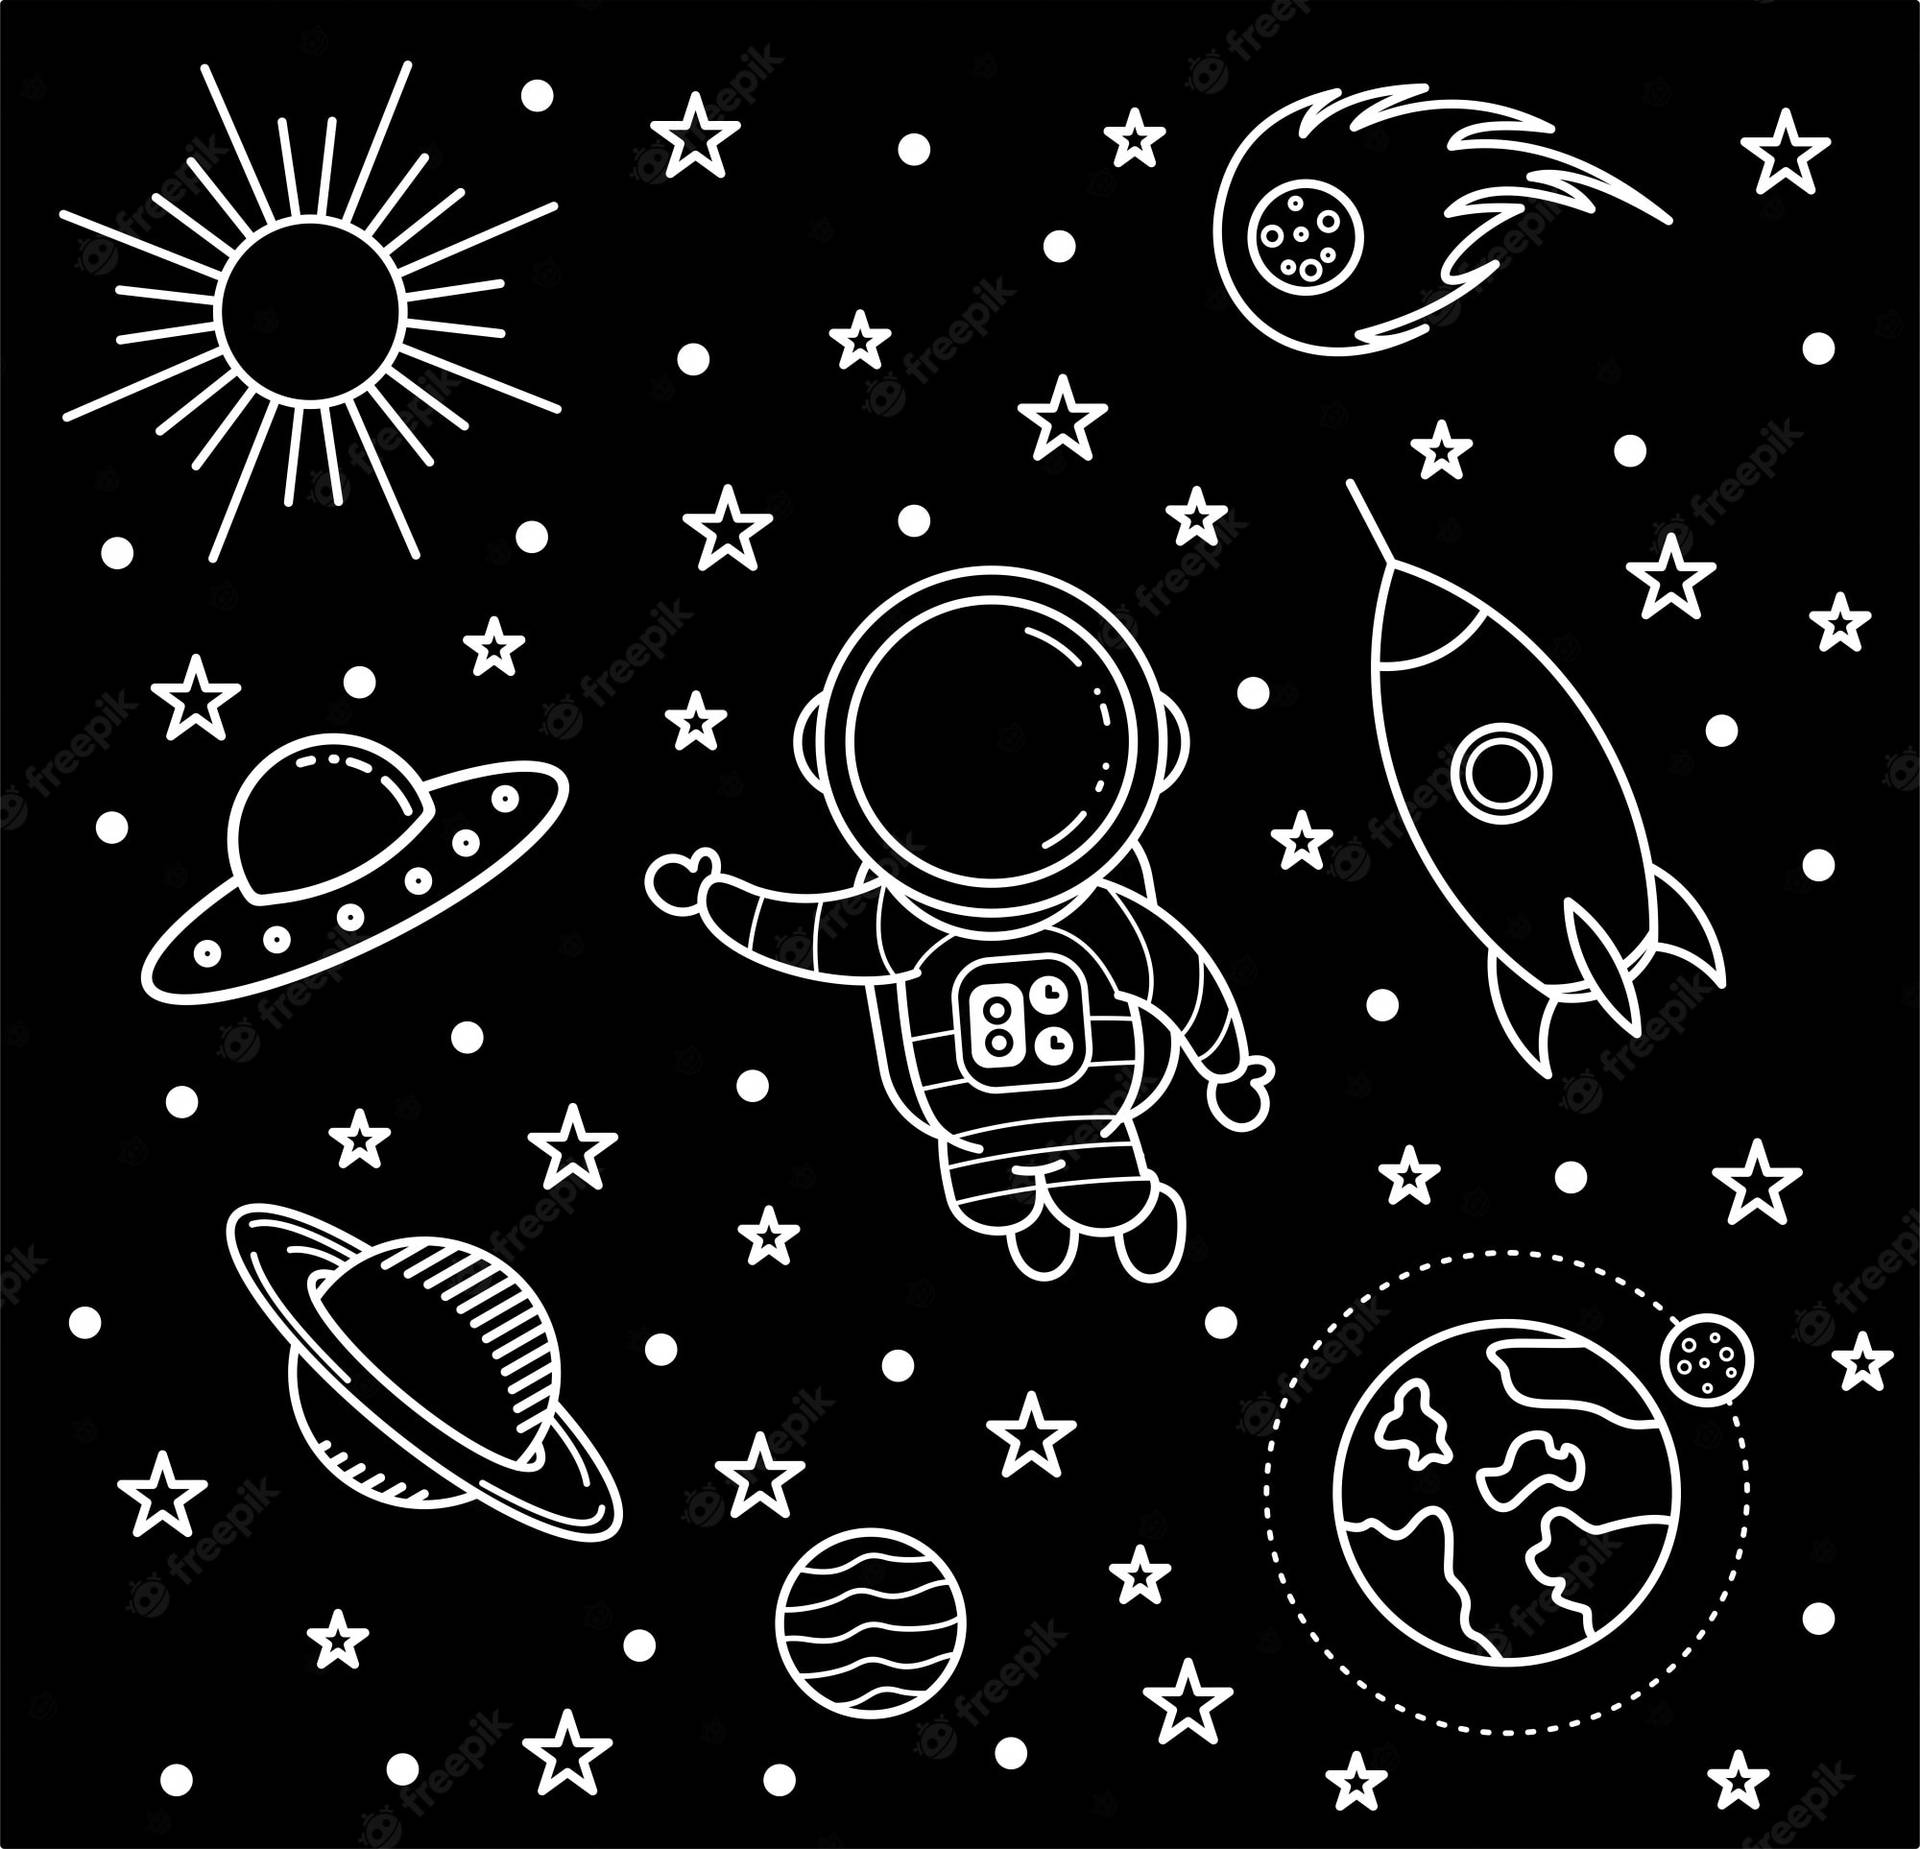 Diseñomini De Esbozos De Astronautas En Blanco Y Negro. Fondo de pantalla